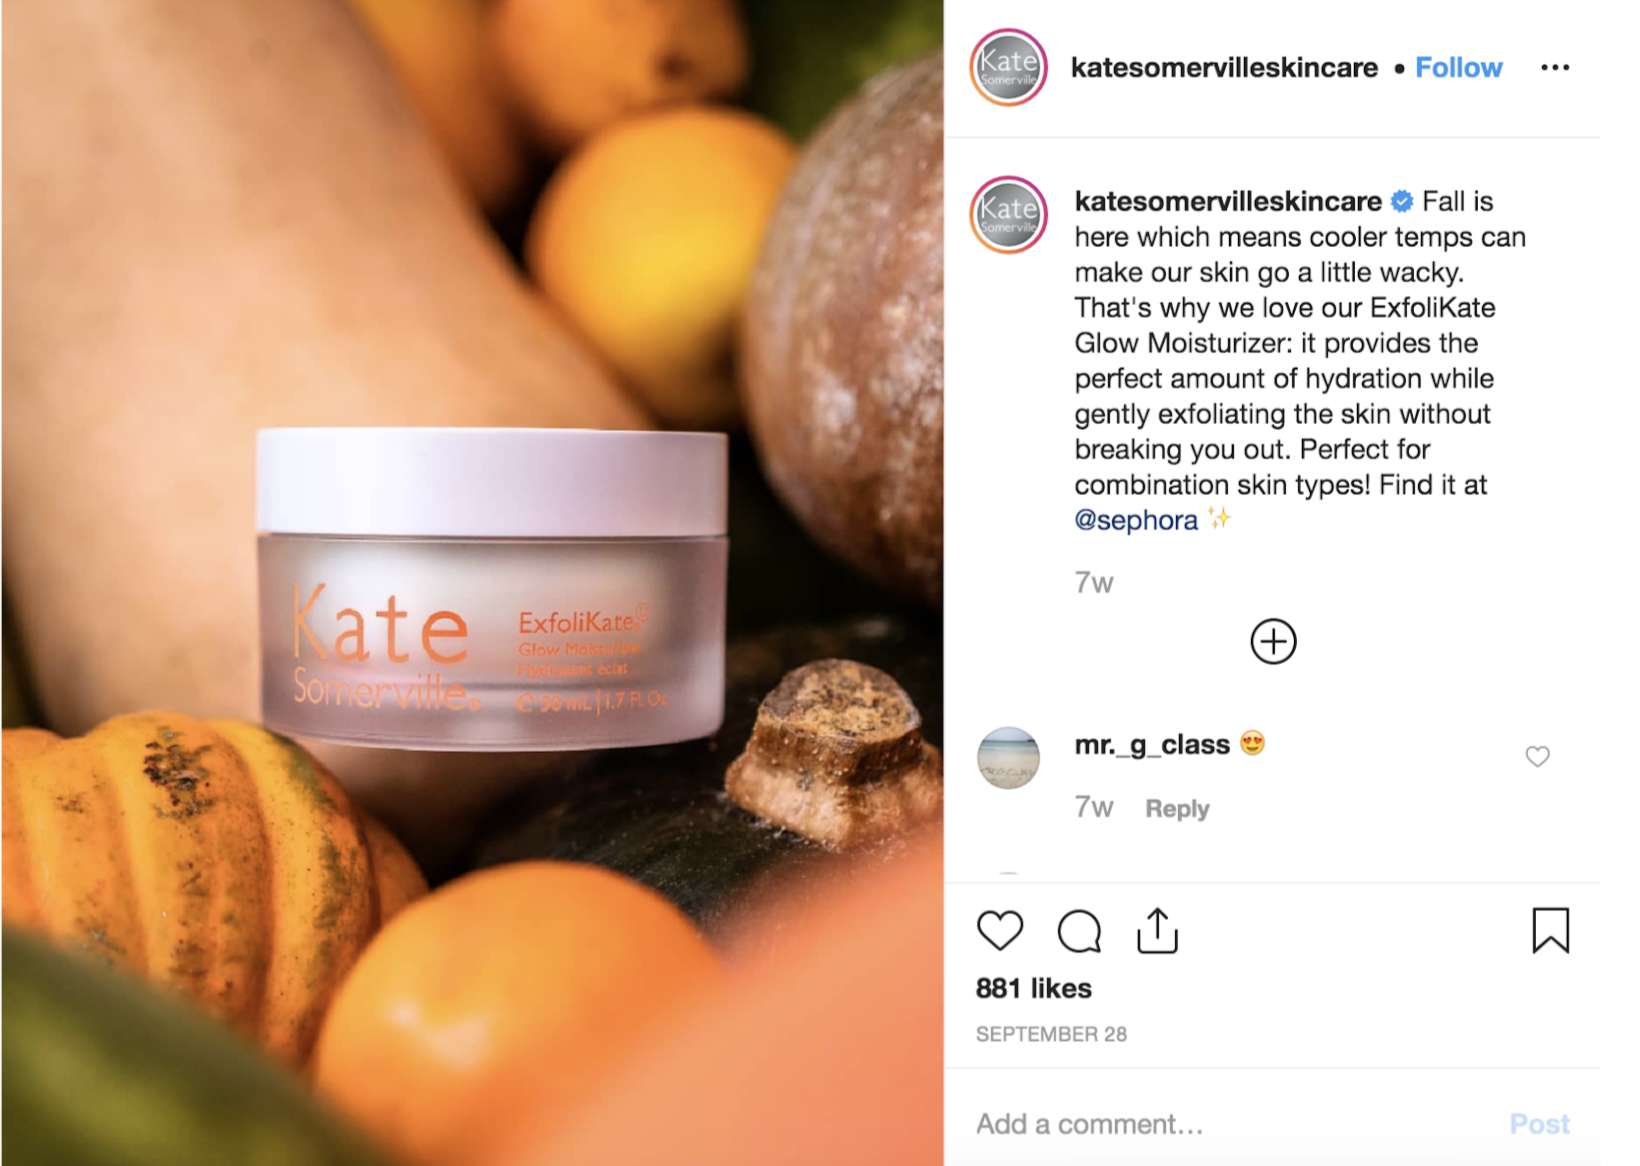 Kate Somerville Skincare Instagram post